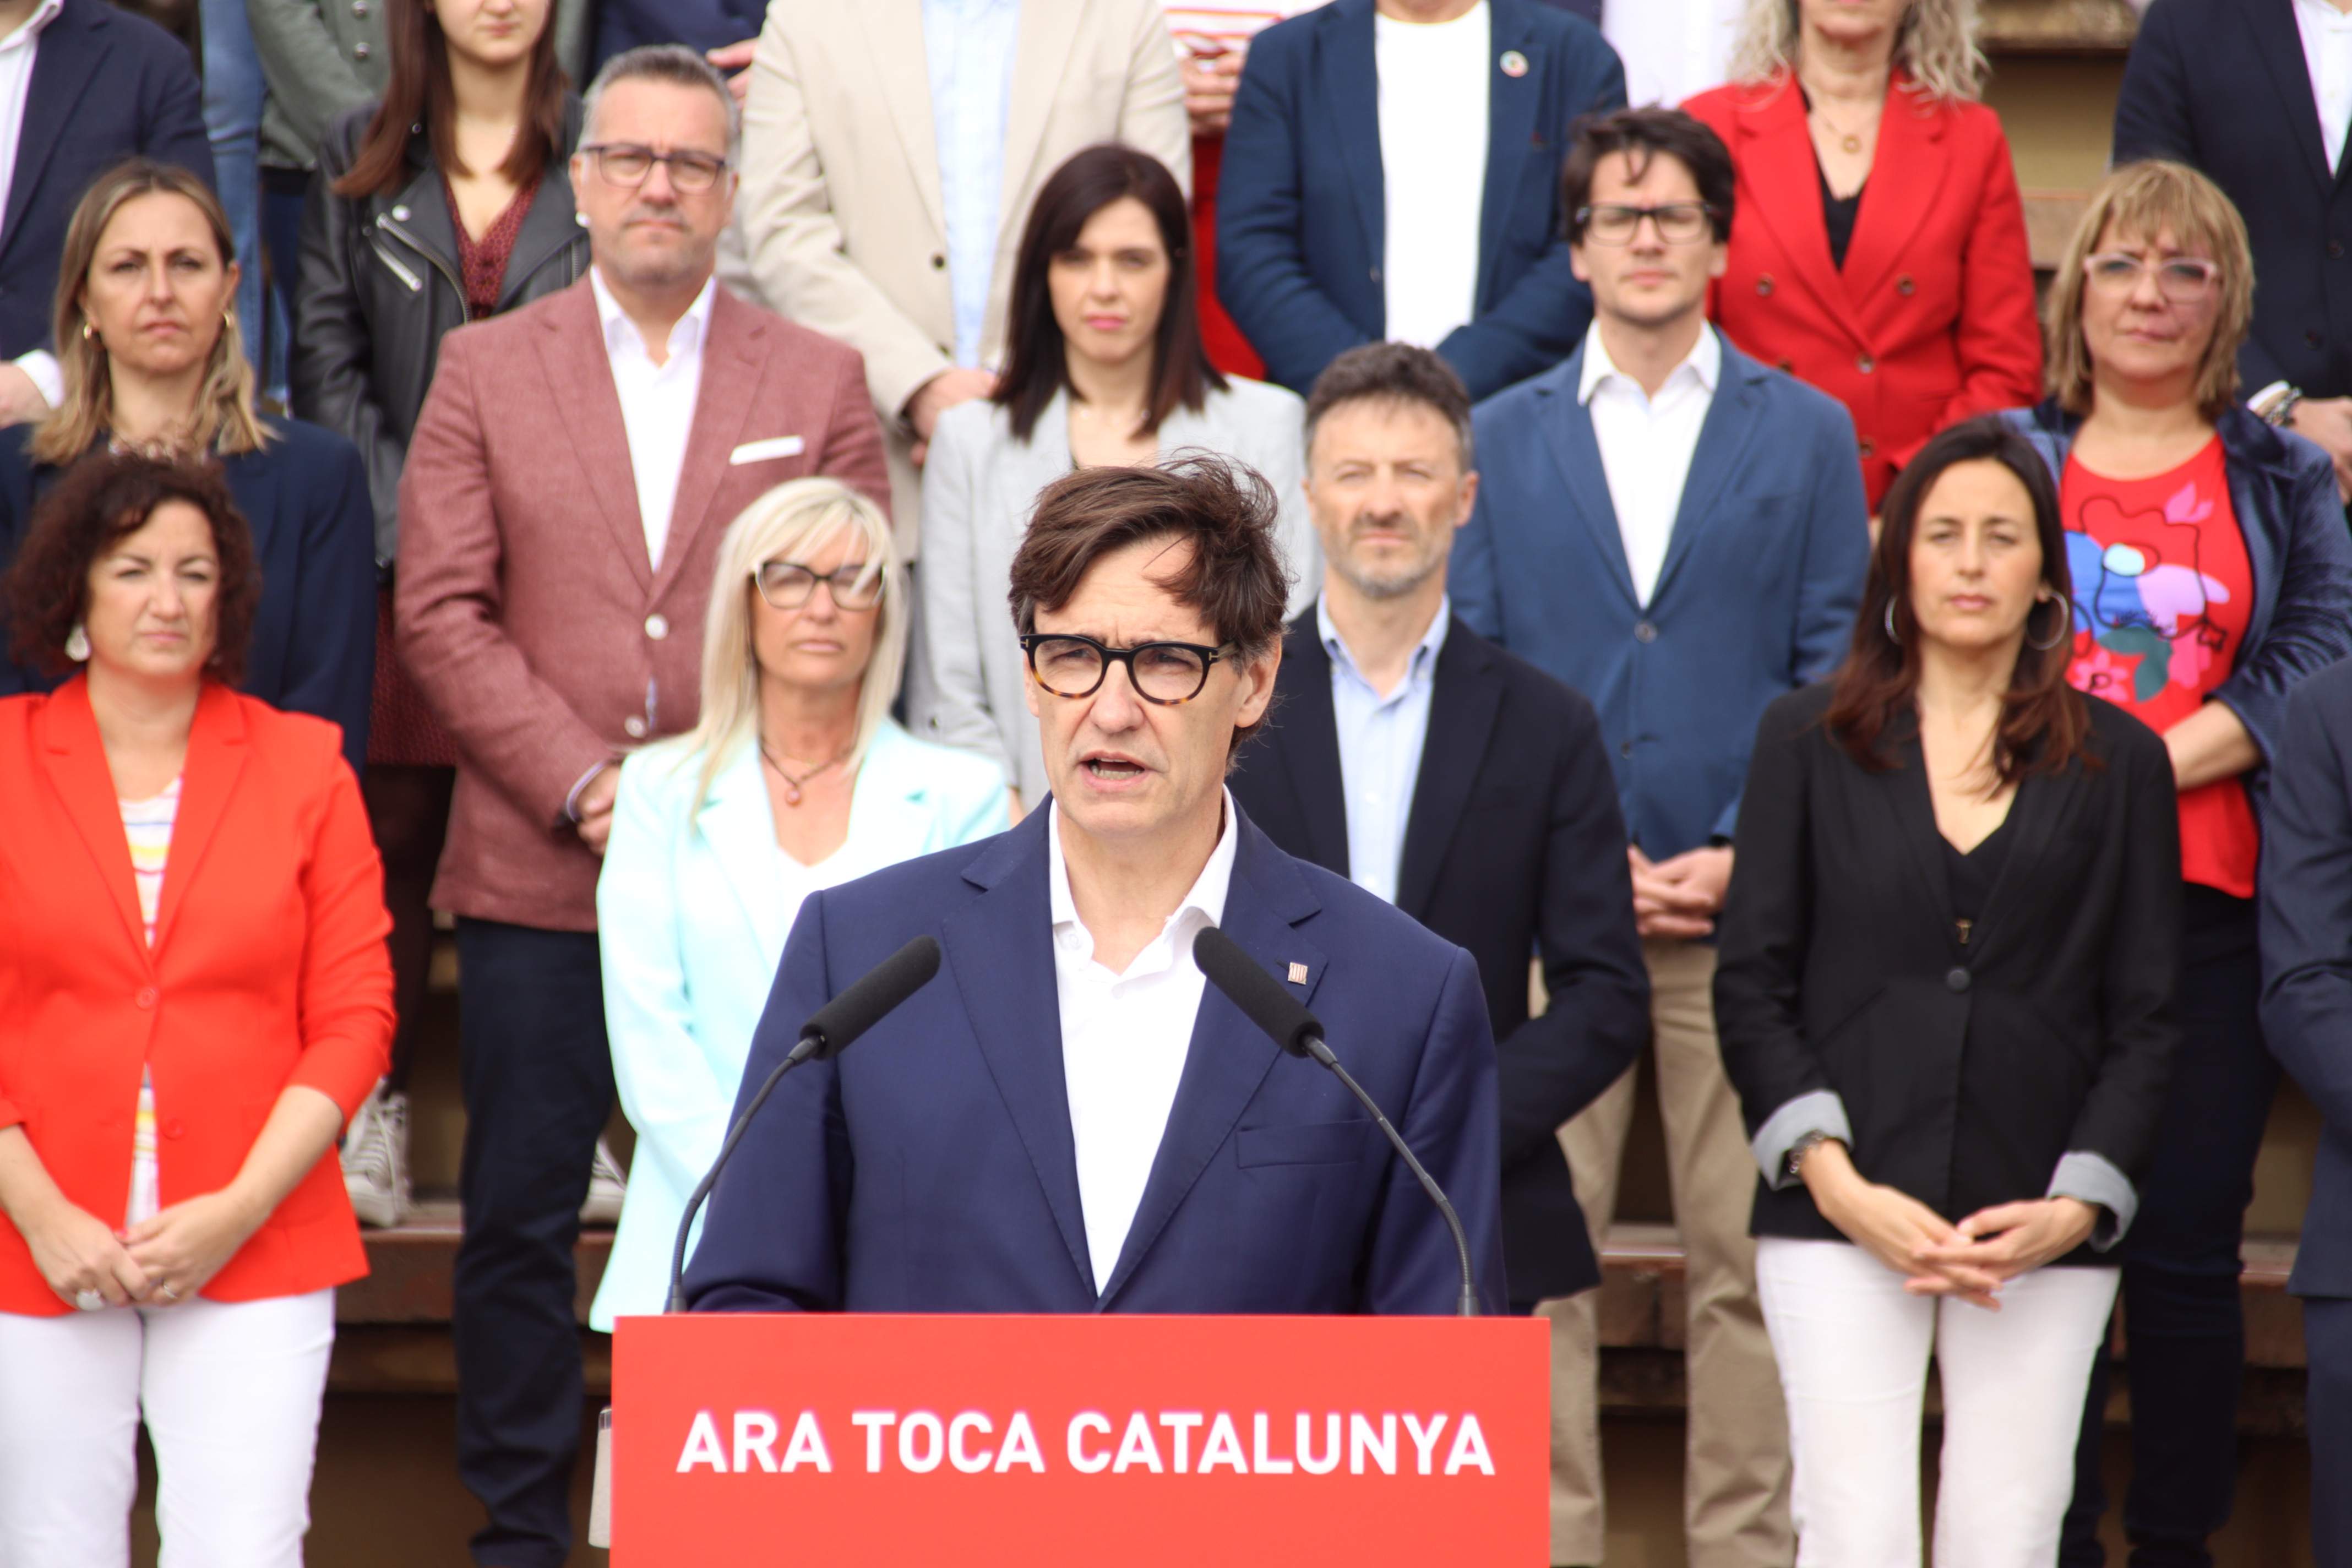 Illa defiende formar un Govern por encima de ideologías: "La mejor Catalunya está por venir"